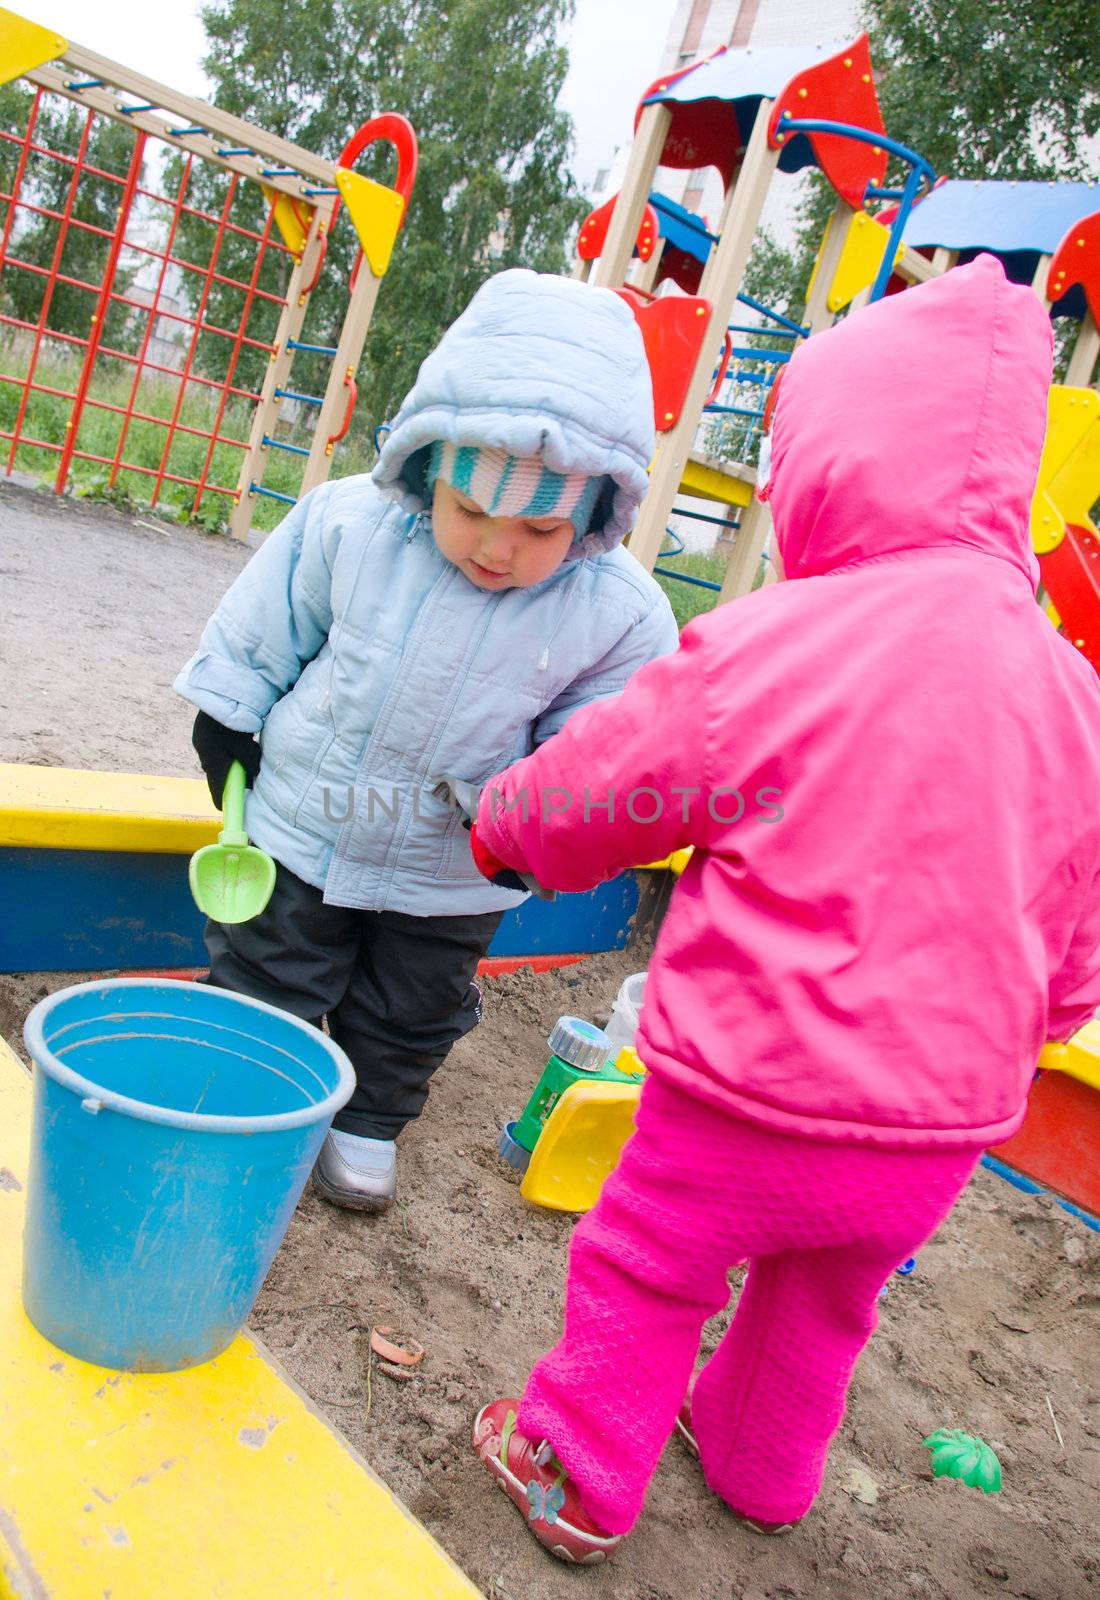 children on playground by Fanfo